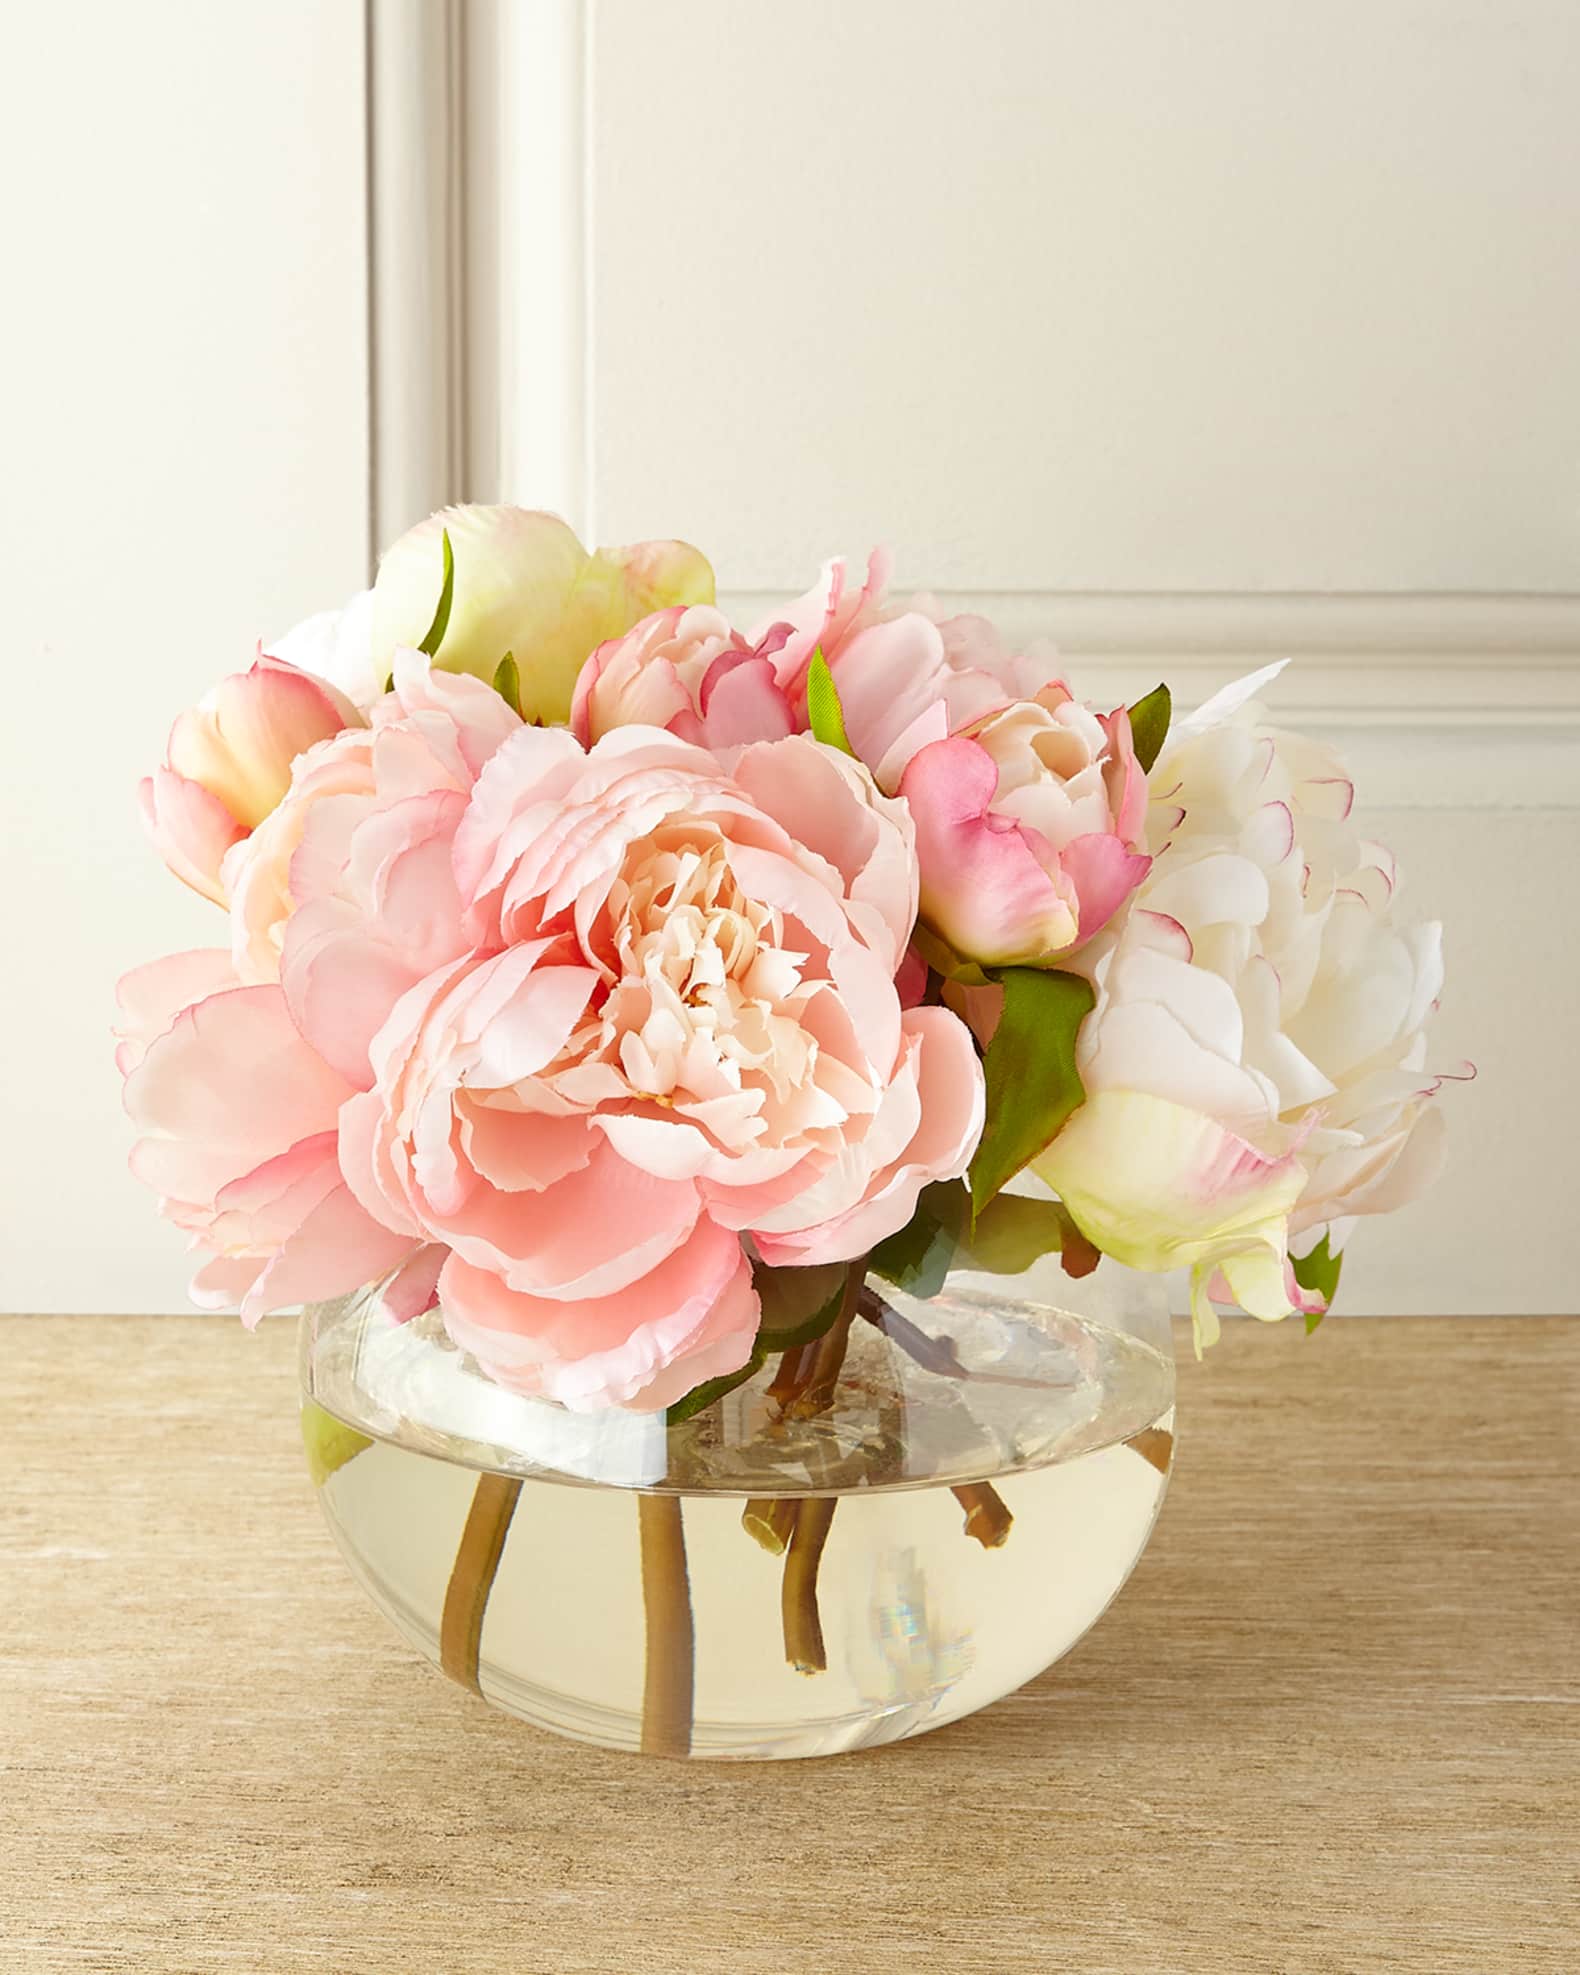 John-Richard Collection Chantilly Lace Faux-Floral Arrangement